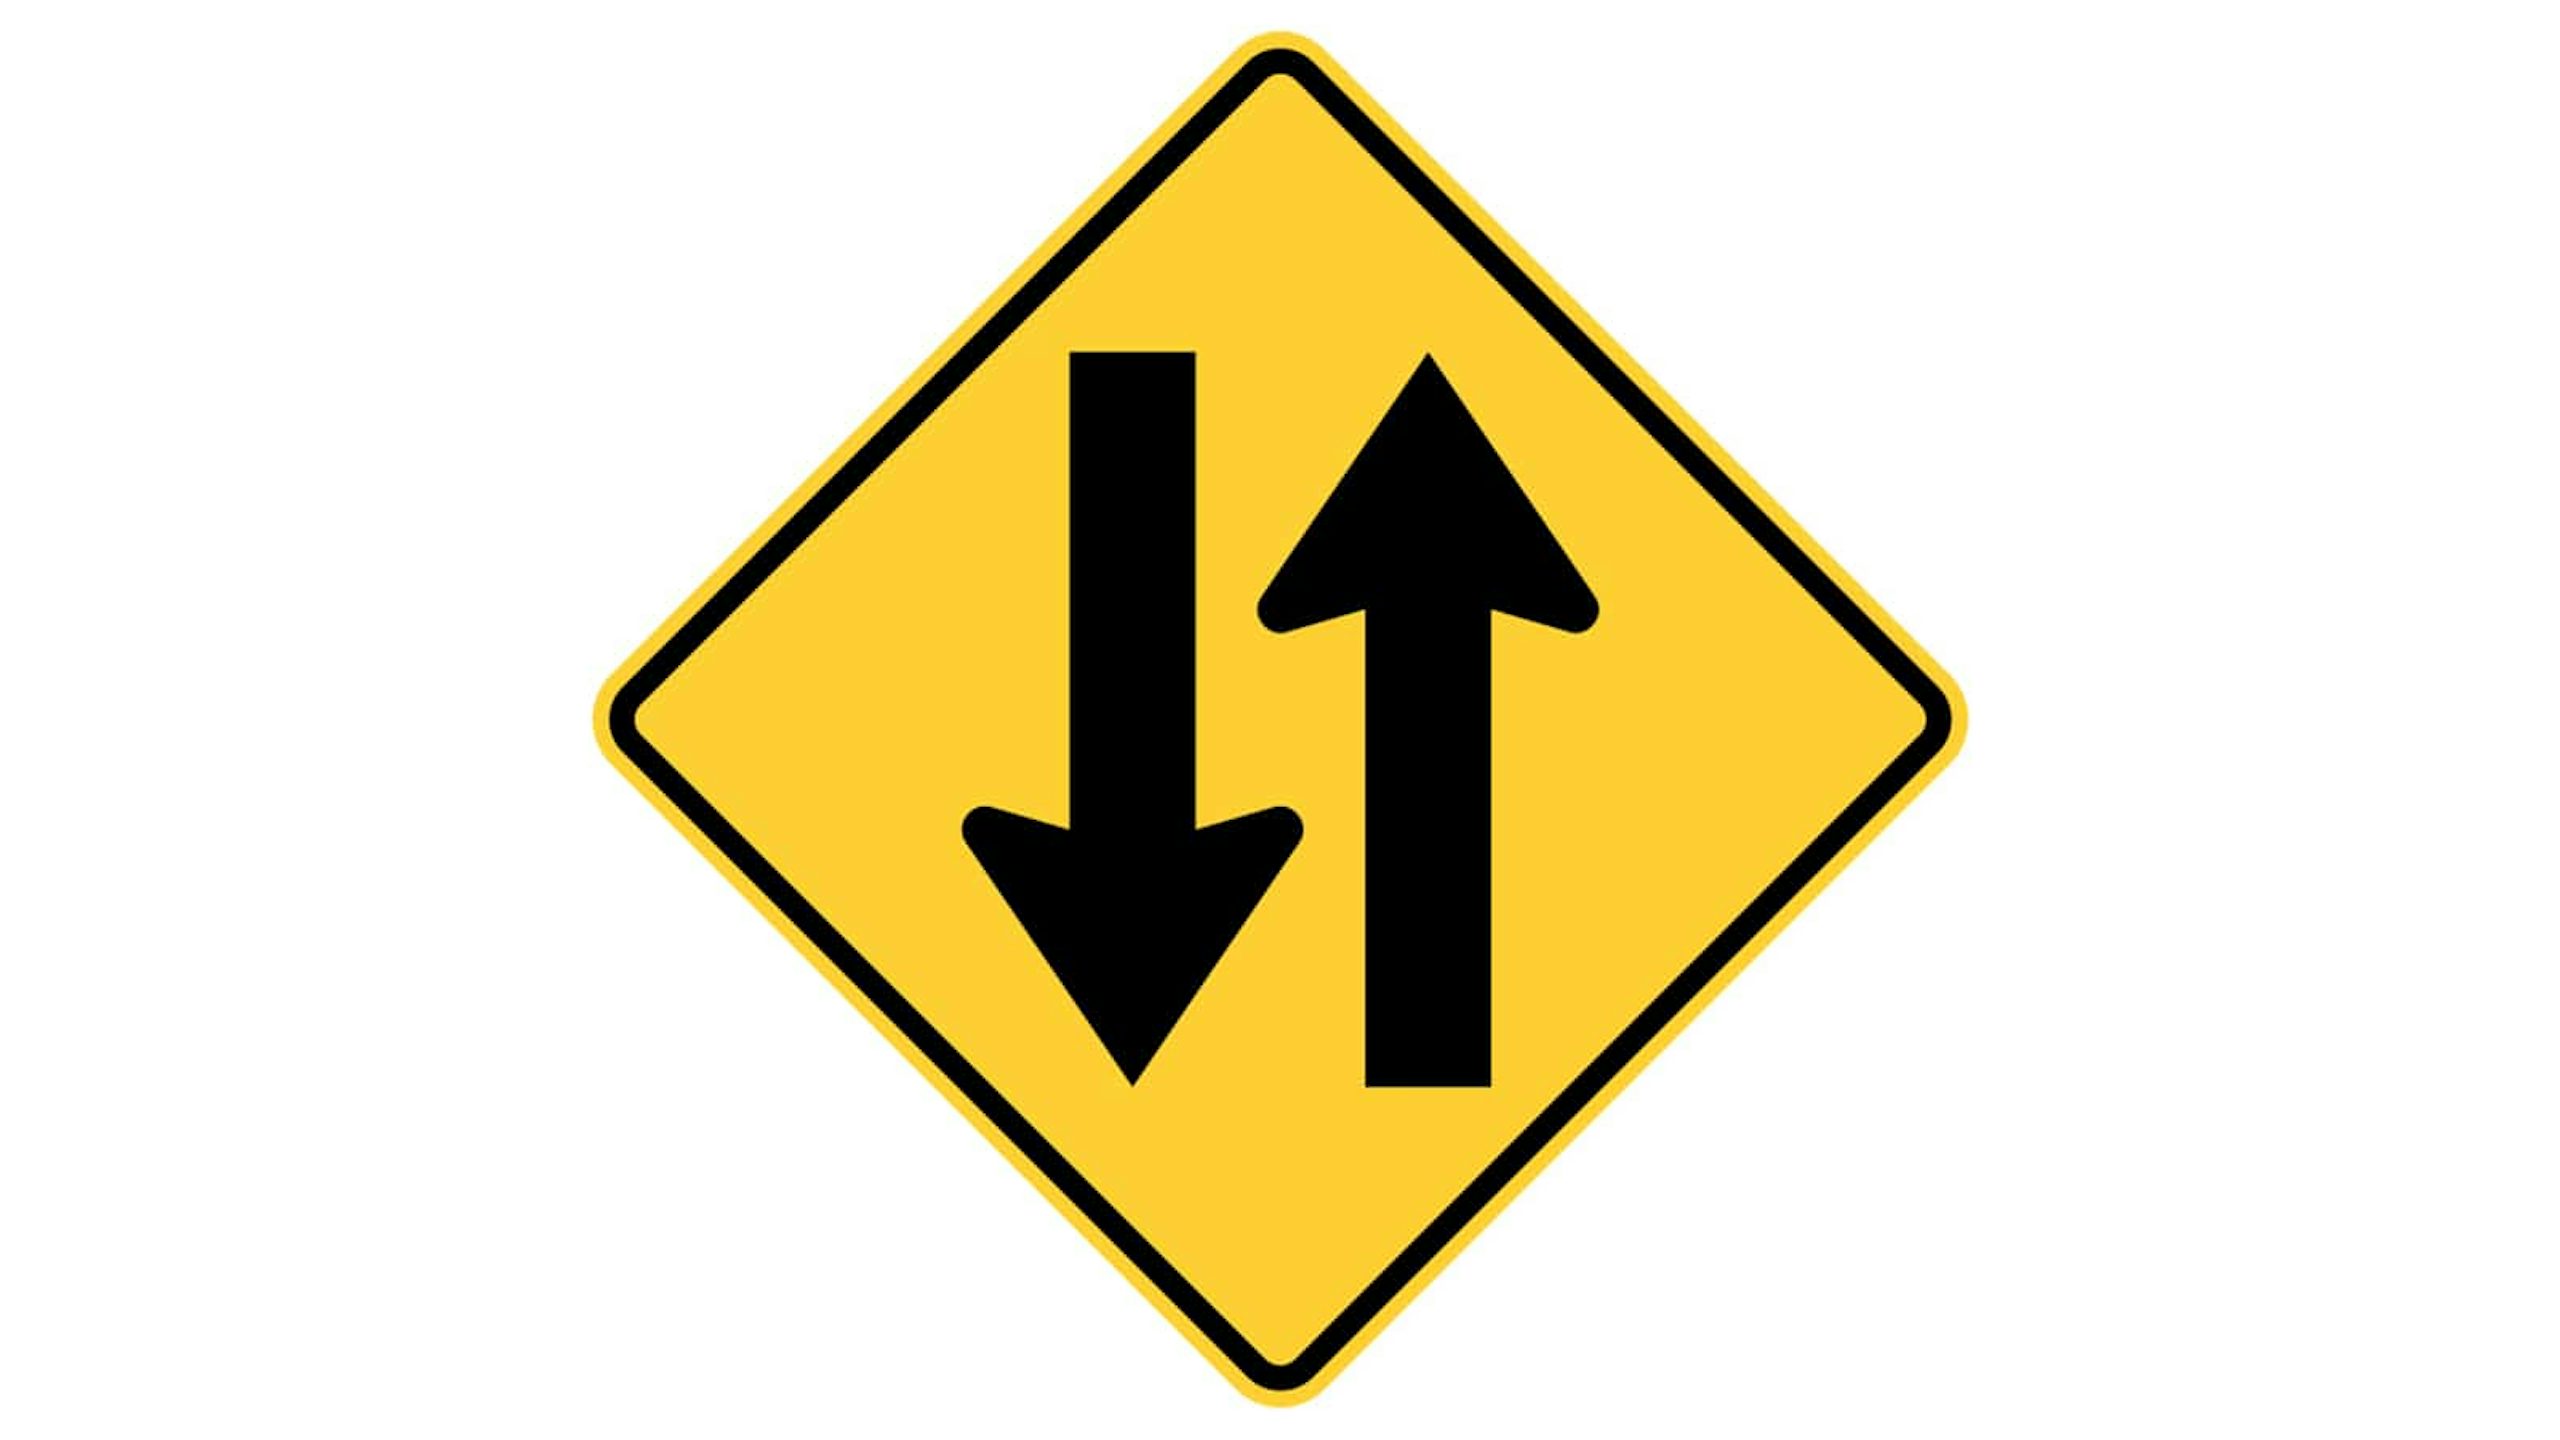 traffic warning signs and symbols